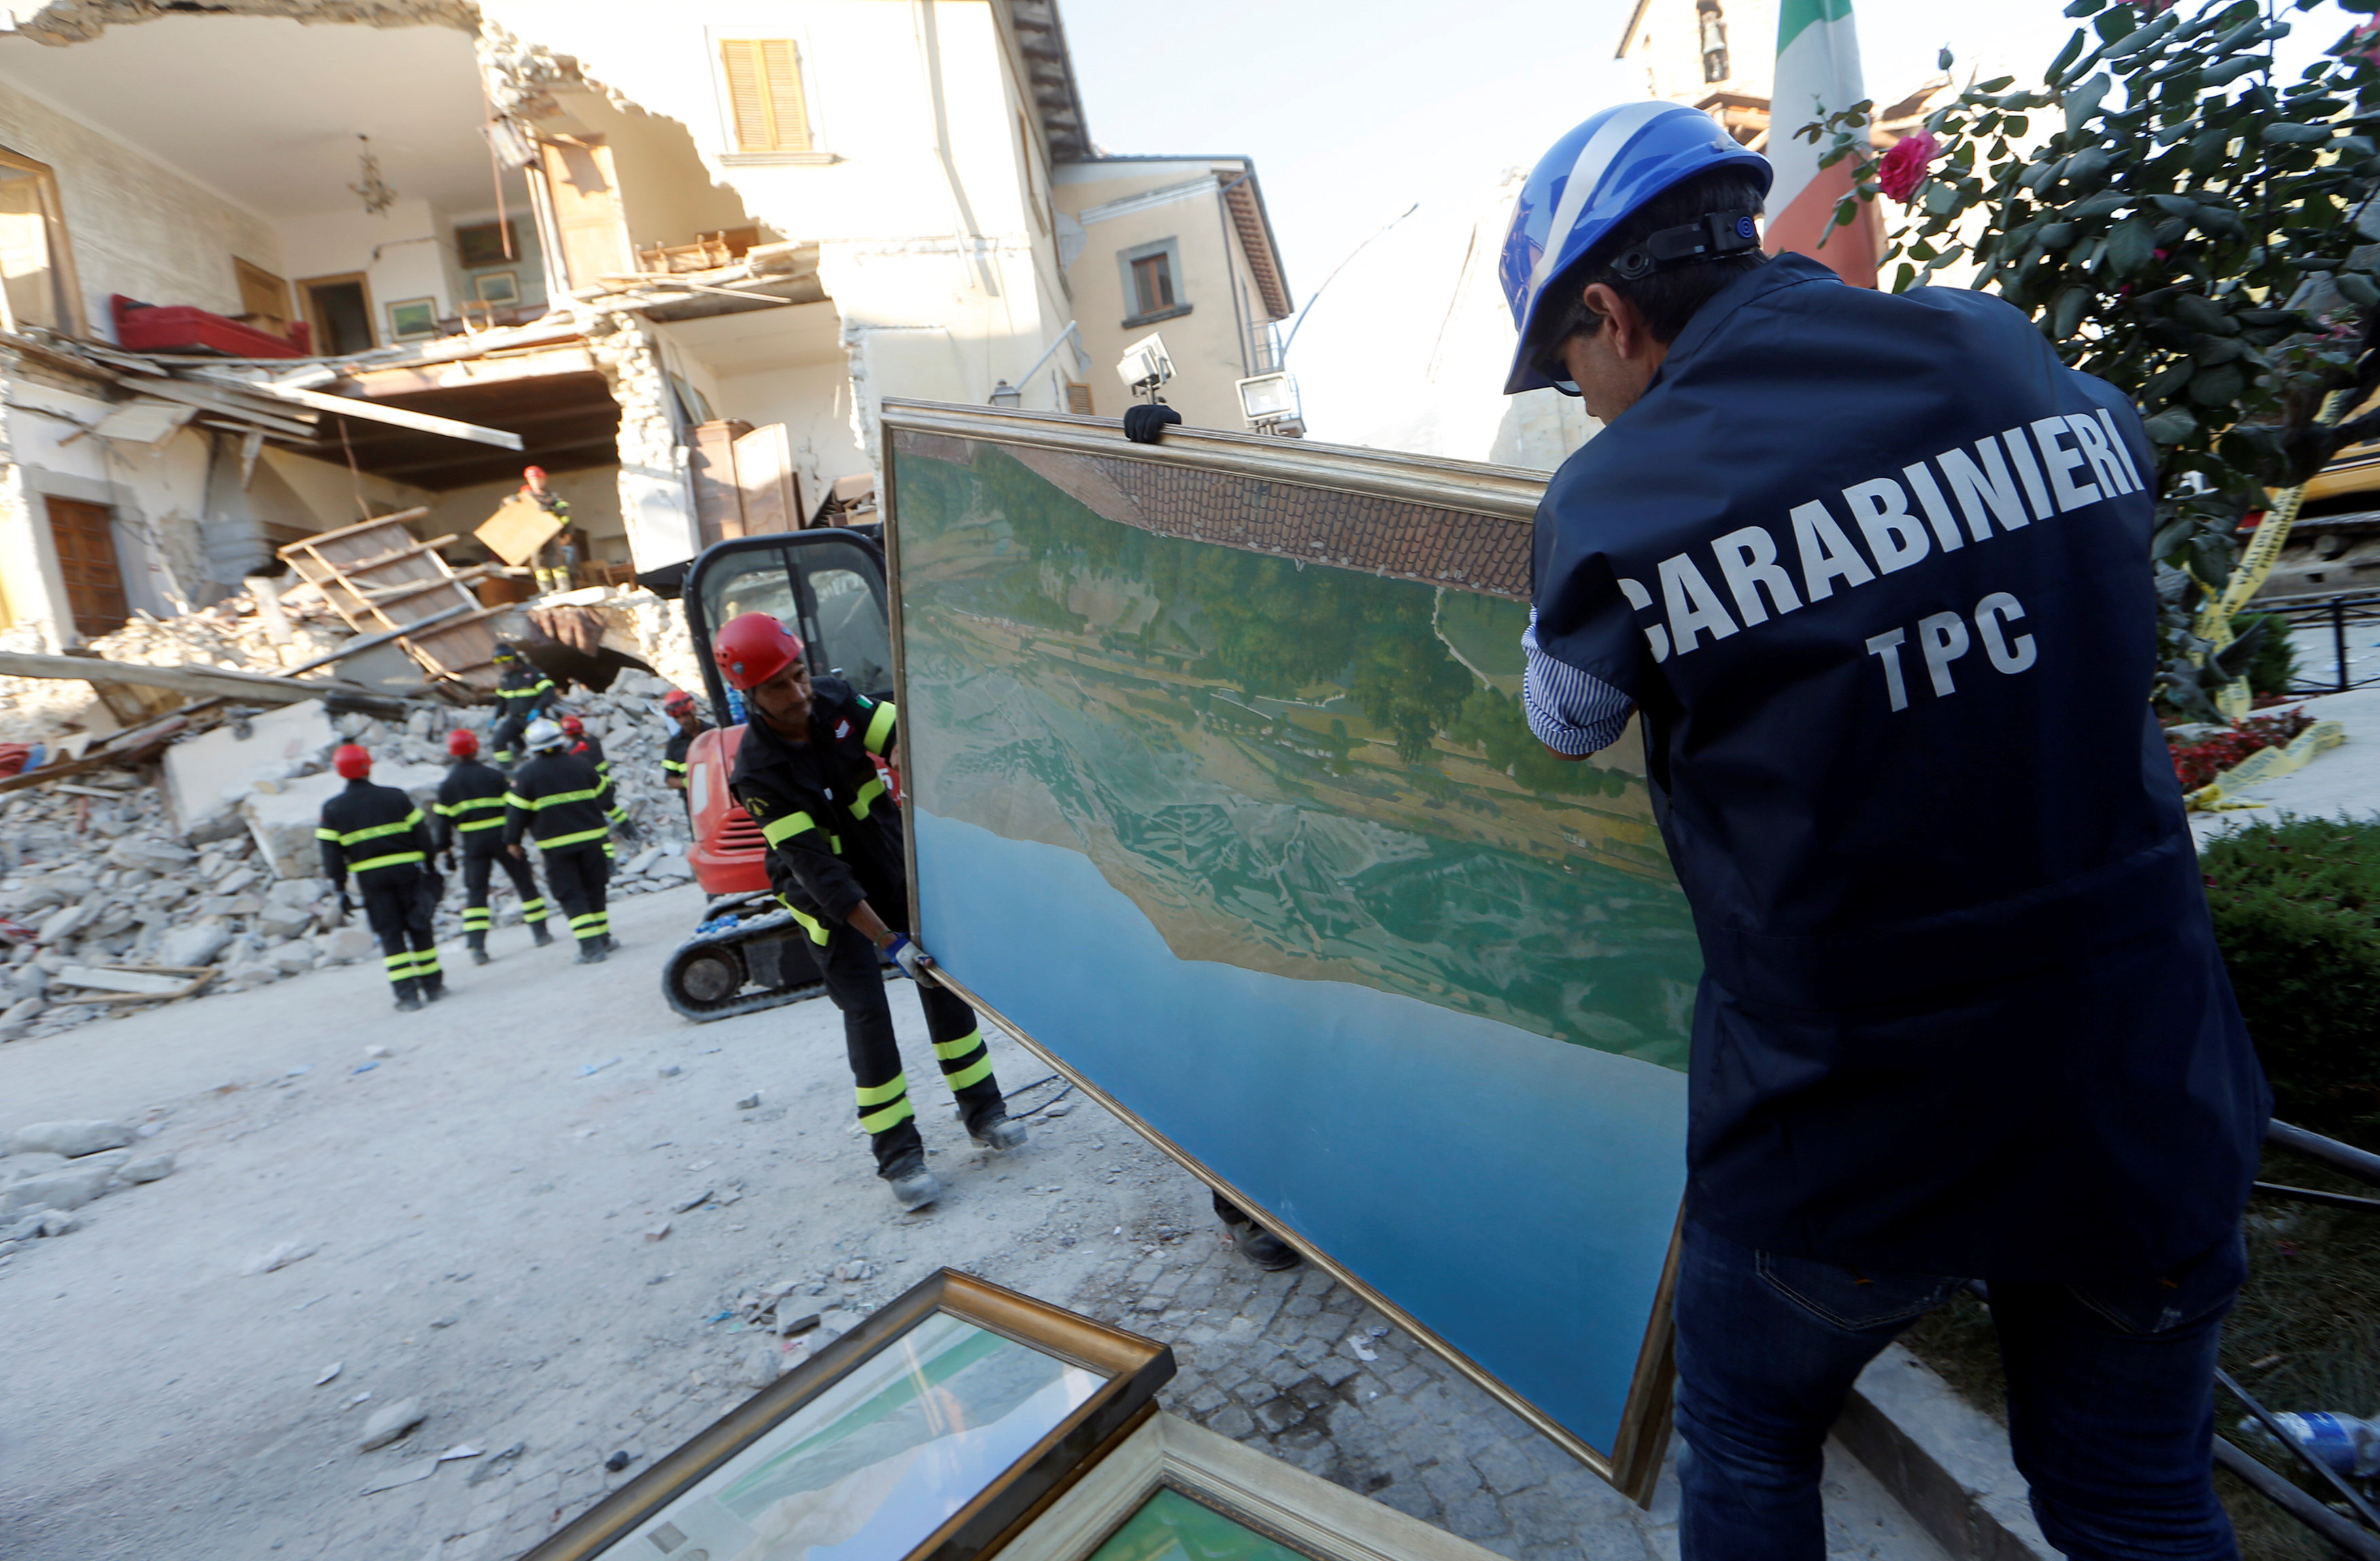 Cinco días después del terremoto Amatrice recobra un poco de calma